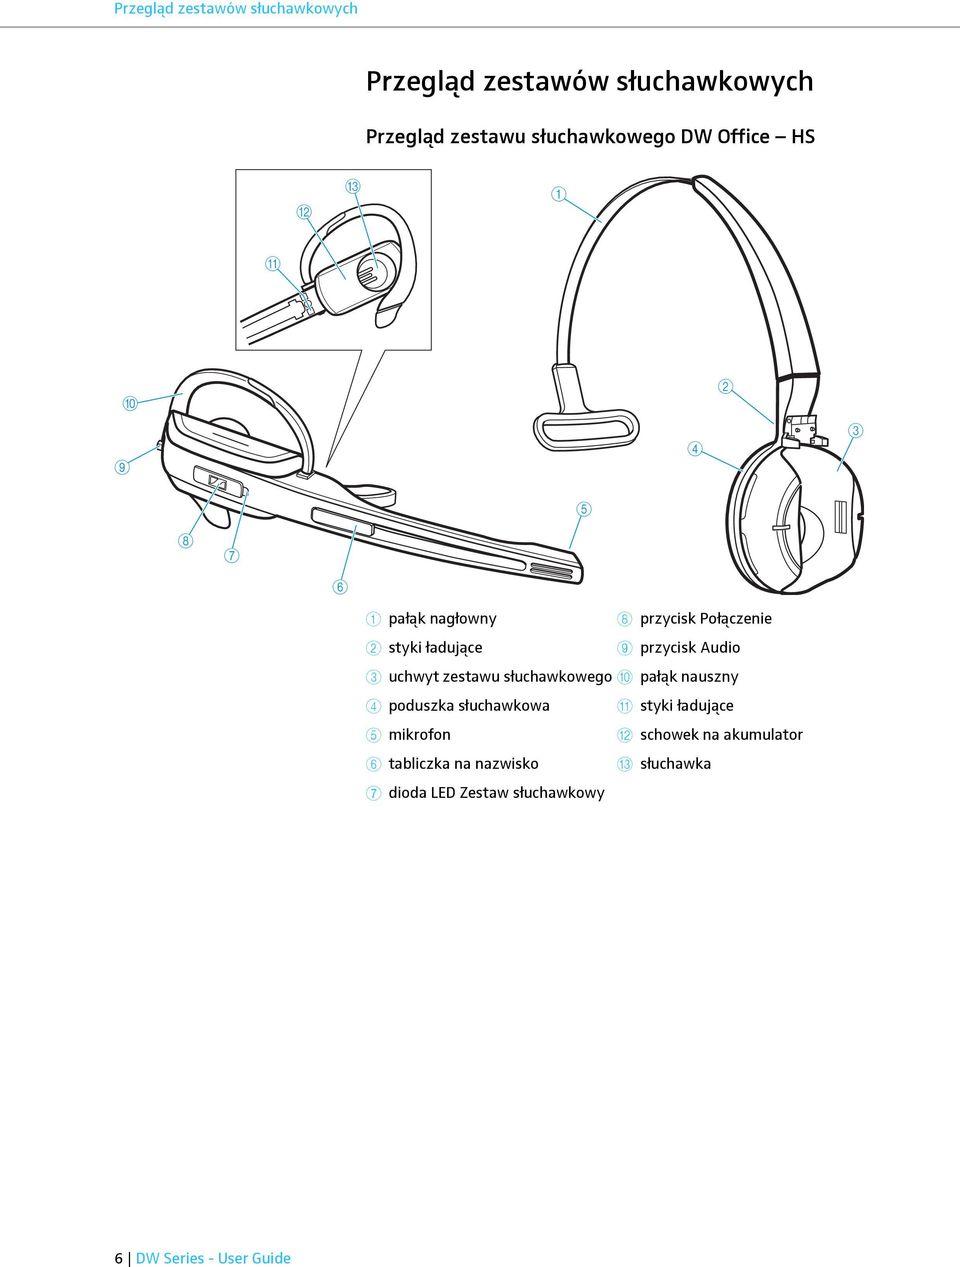 uchwyt zestawu słuchawkowego 0 pałąk nauszny 4 poduszka słuchawkowa A styki ładujące 5 mikrofon B